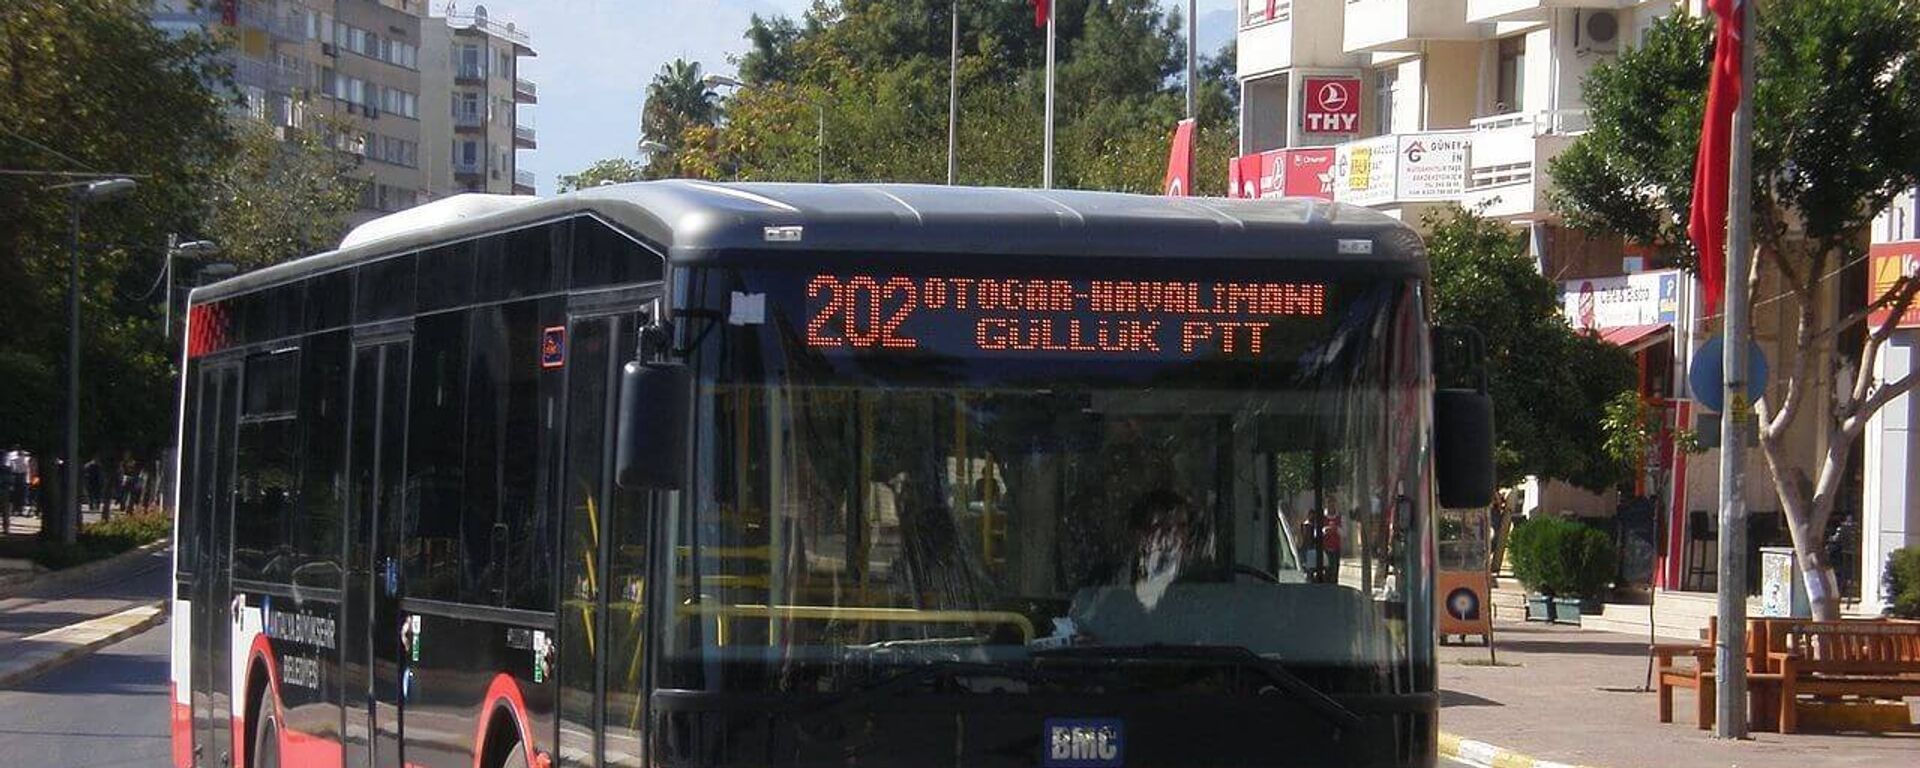 Antalya'da ücretsiz otobüs uygulaması askıya alındı - Sputnik Türkiye, 1920, 20.07.2021